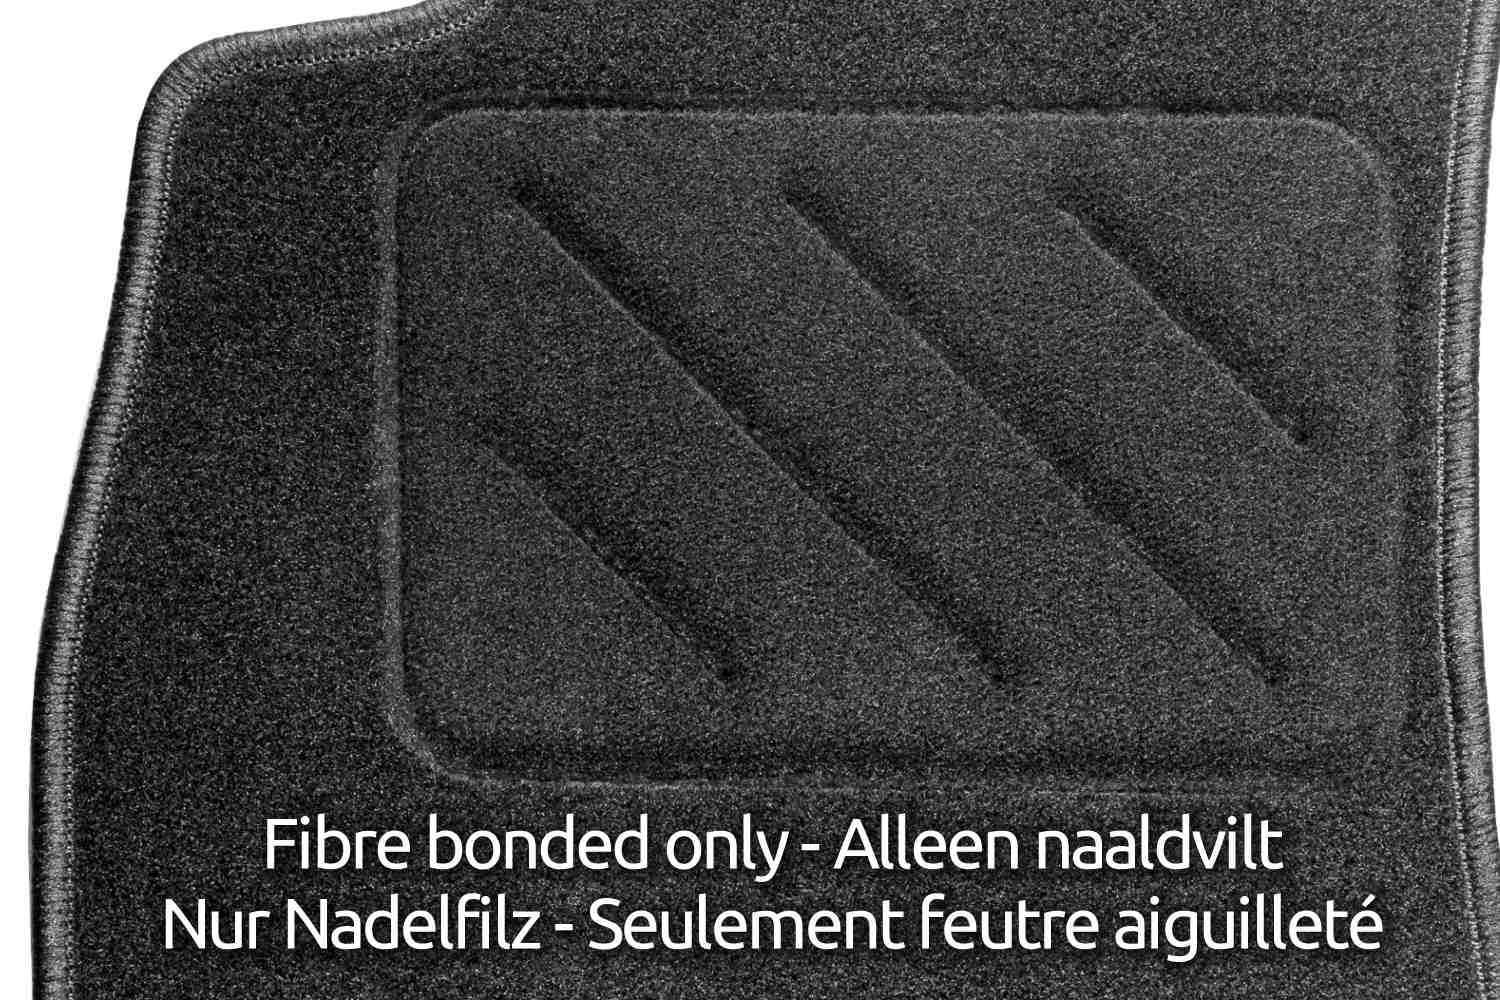 Heel pad (fibre bonded) - Hakplaat (naaldvilt) - Fersenpolster (Nadelfilz) - Talonnette de renfort (feutre aiguilleté)